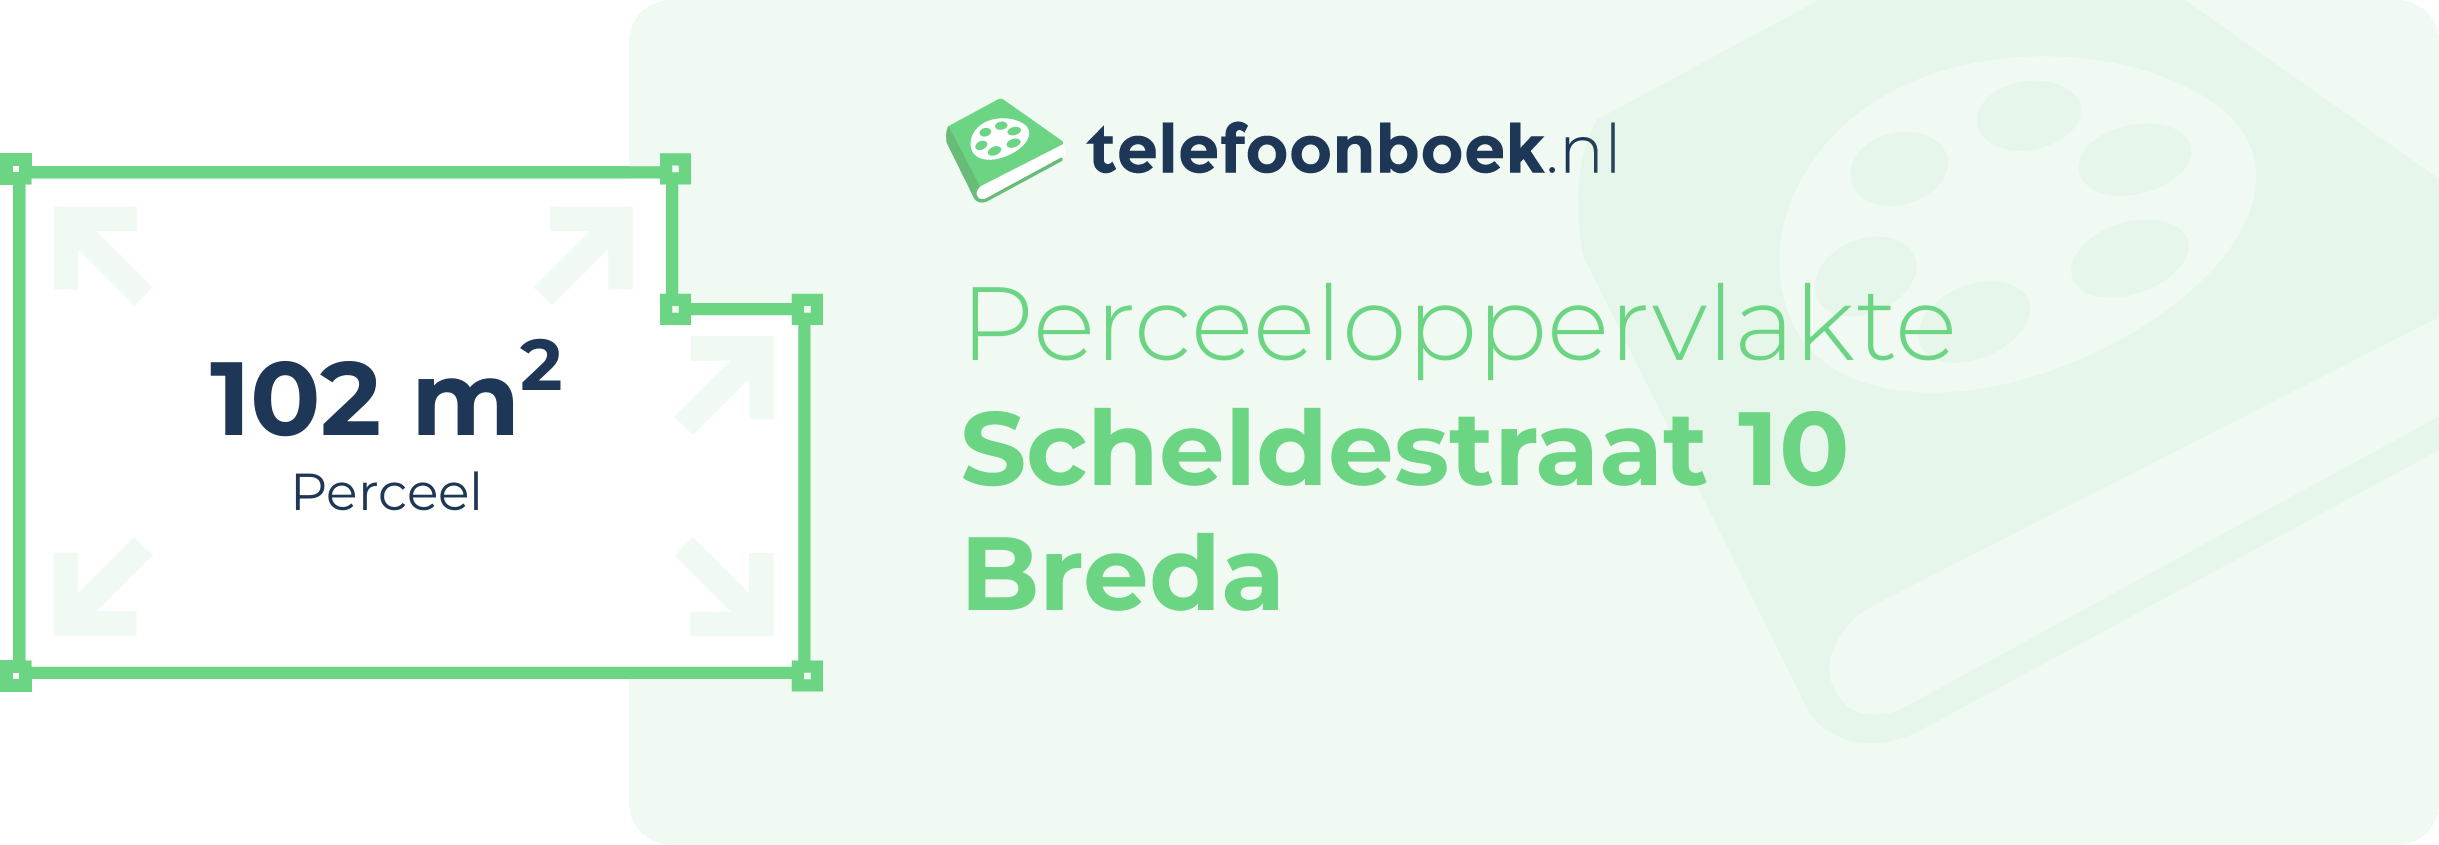 Perceeloppervlakte Scheldestraat 10 Breda